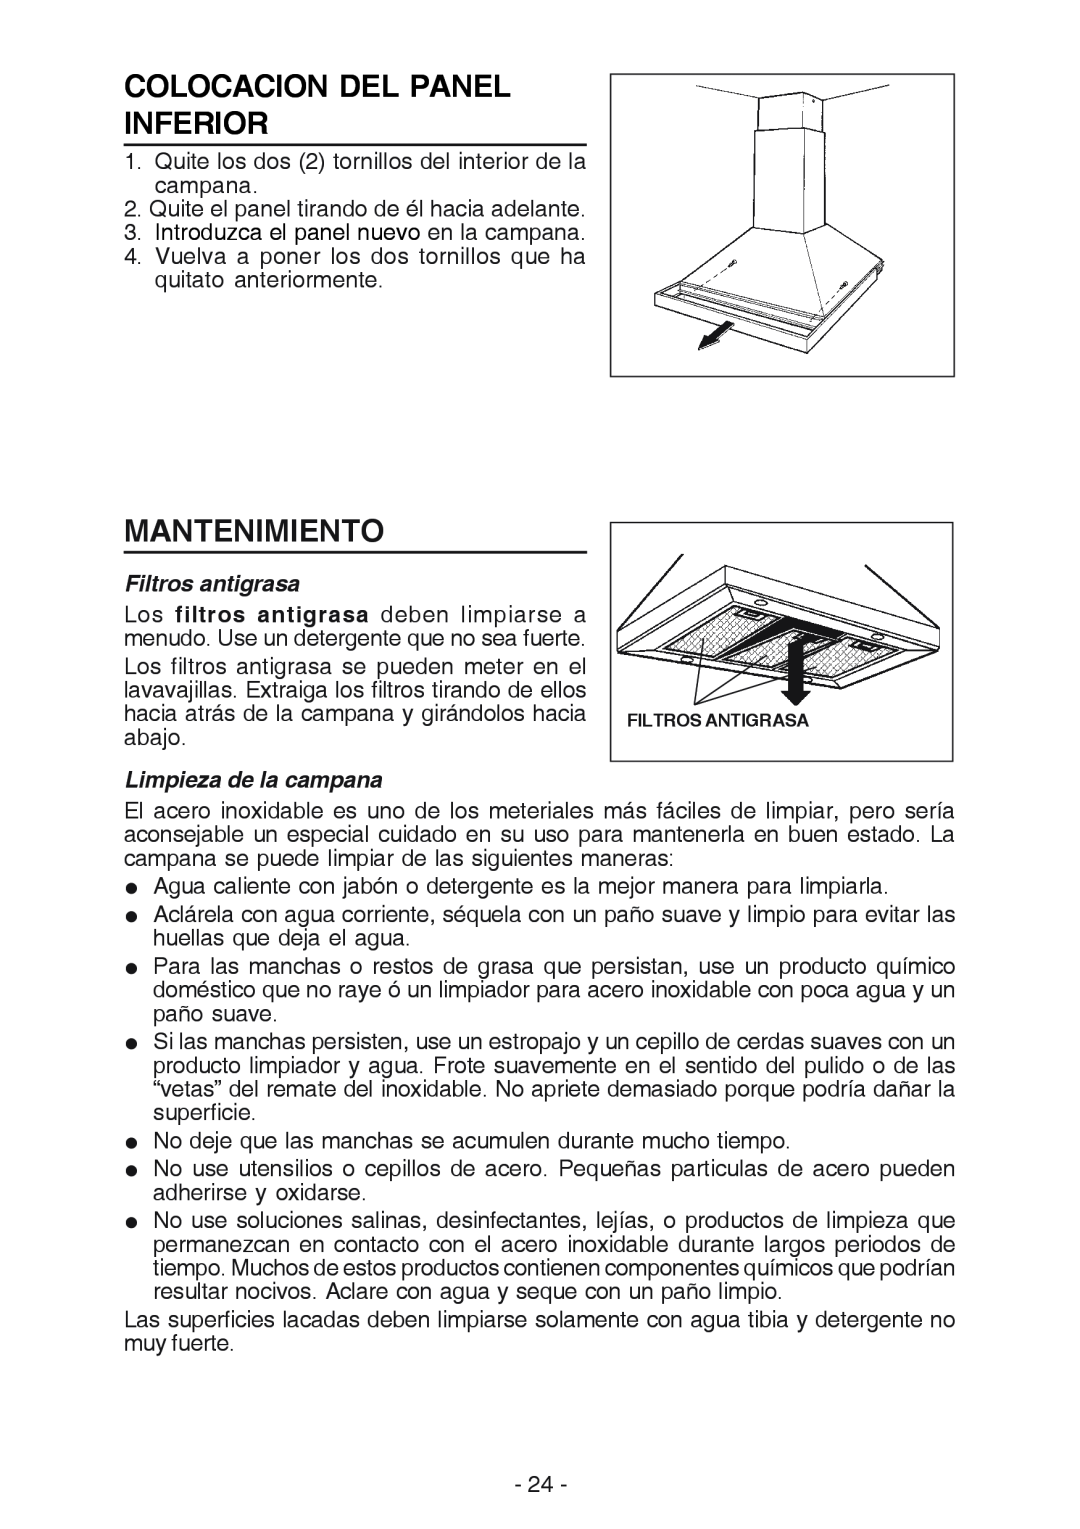 Best K42 manual Colocacion Del Panel Inferior, Mantenimiento, Filtros antigrasa, Limpieza de la campana 